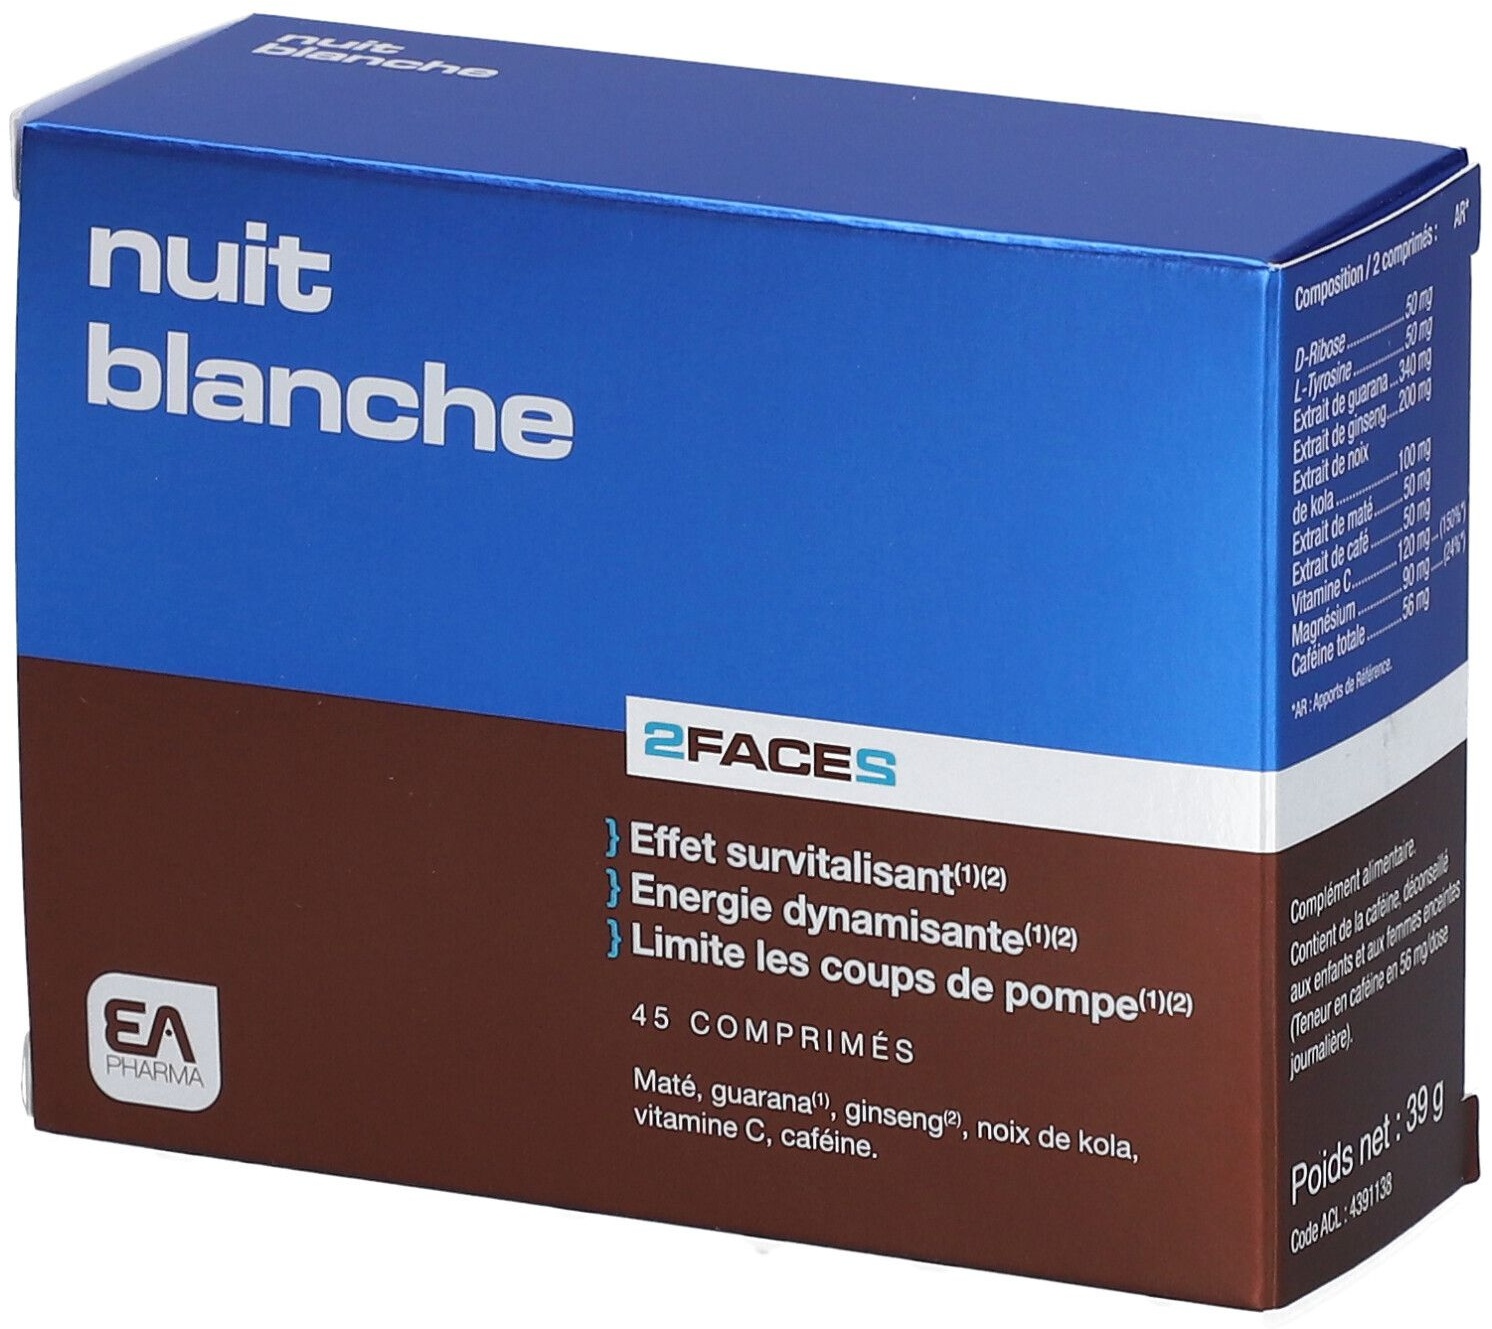 EA Pharma Nuit Blanche 2Faces 45 pc(s) comprimé(s)